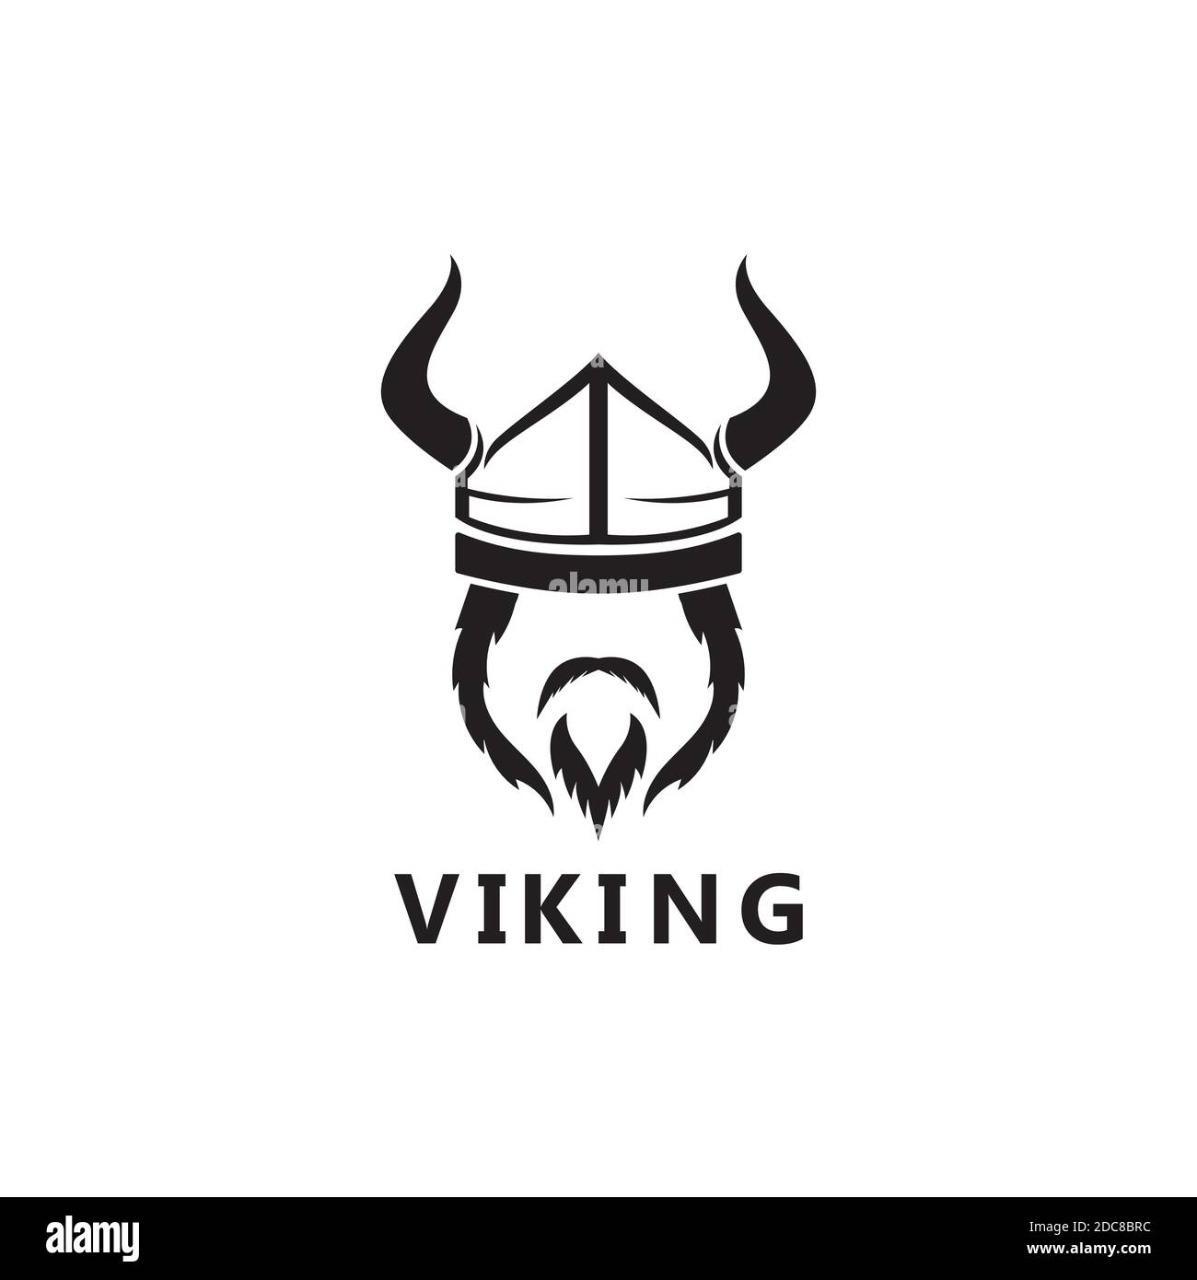 Vikingo95?s=hucztg6wwn+wvt3+3umm2roc8gnpmrzdbnvza1k9wlk=